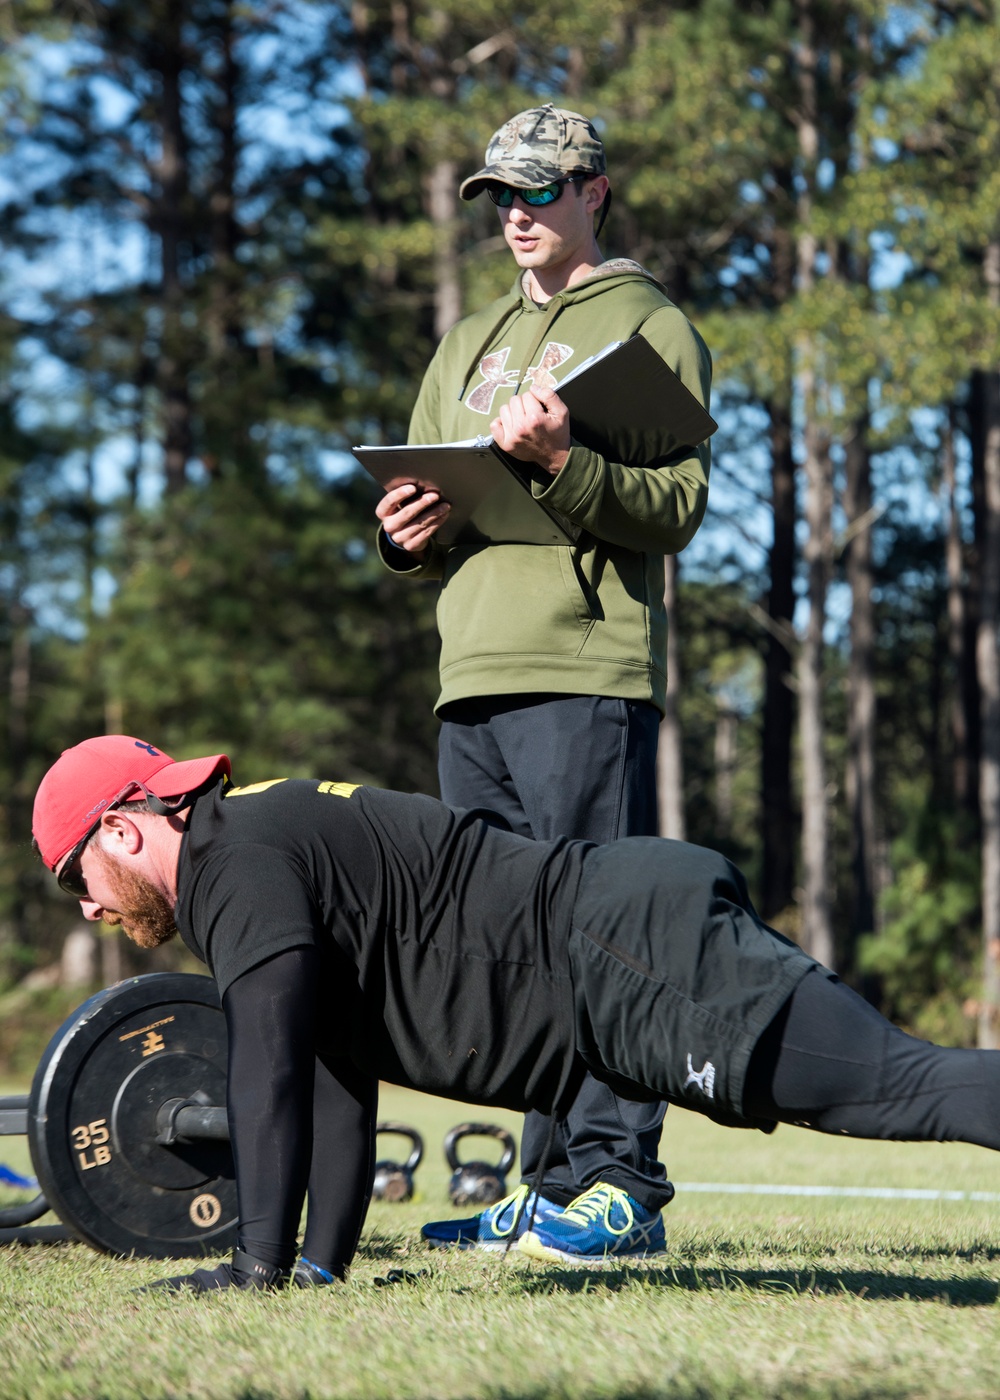 South Carolina National Guard prepares for ACRT